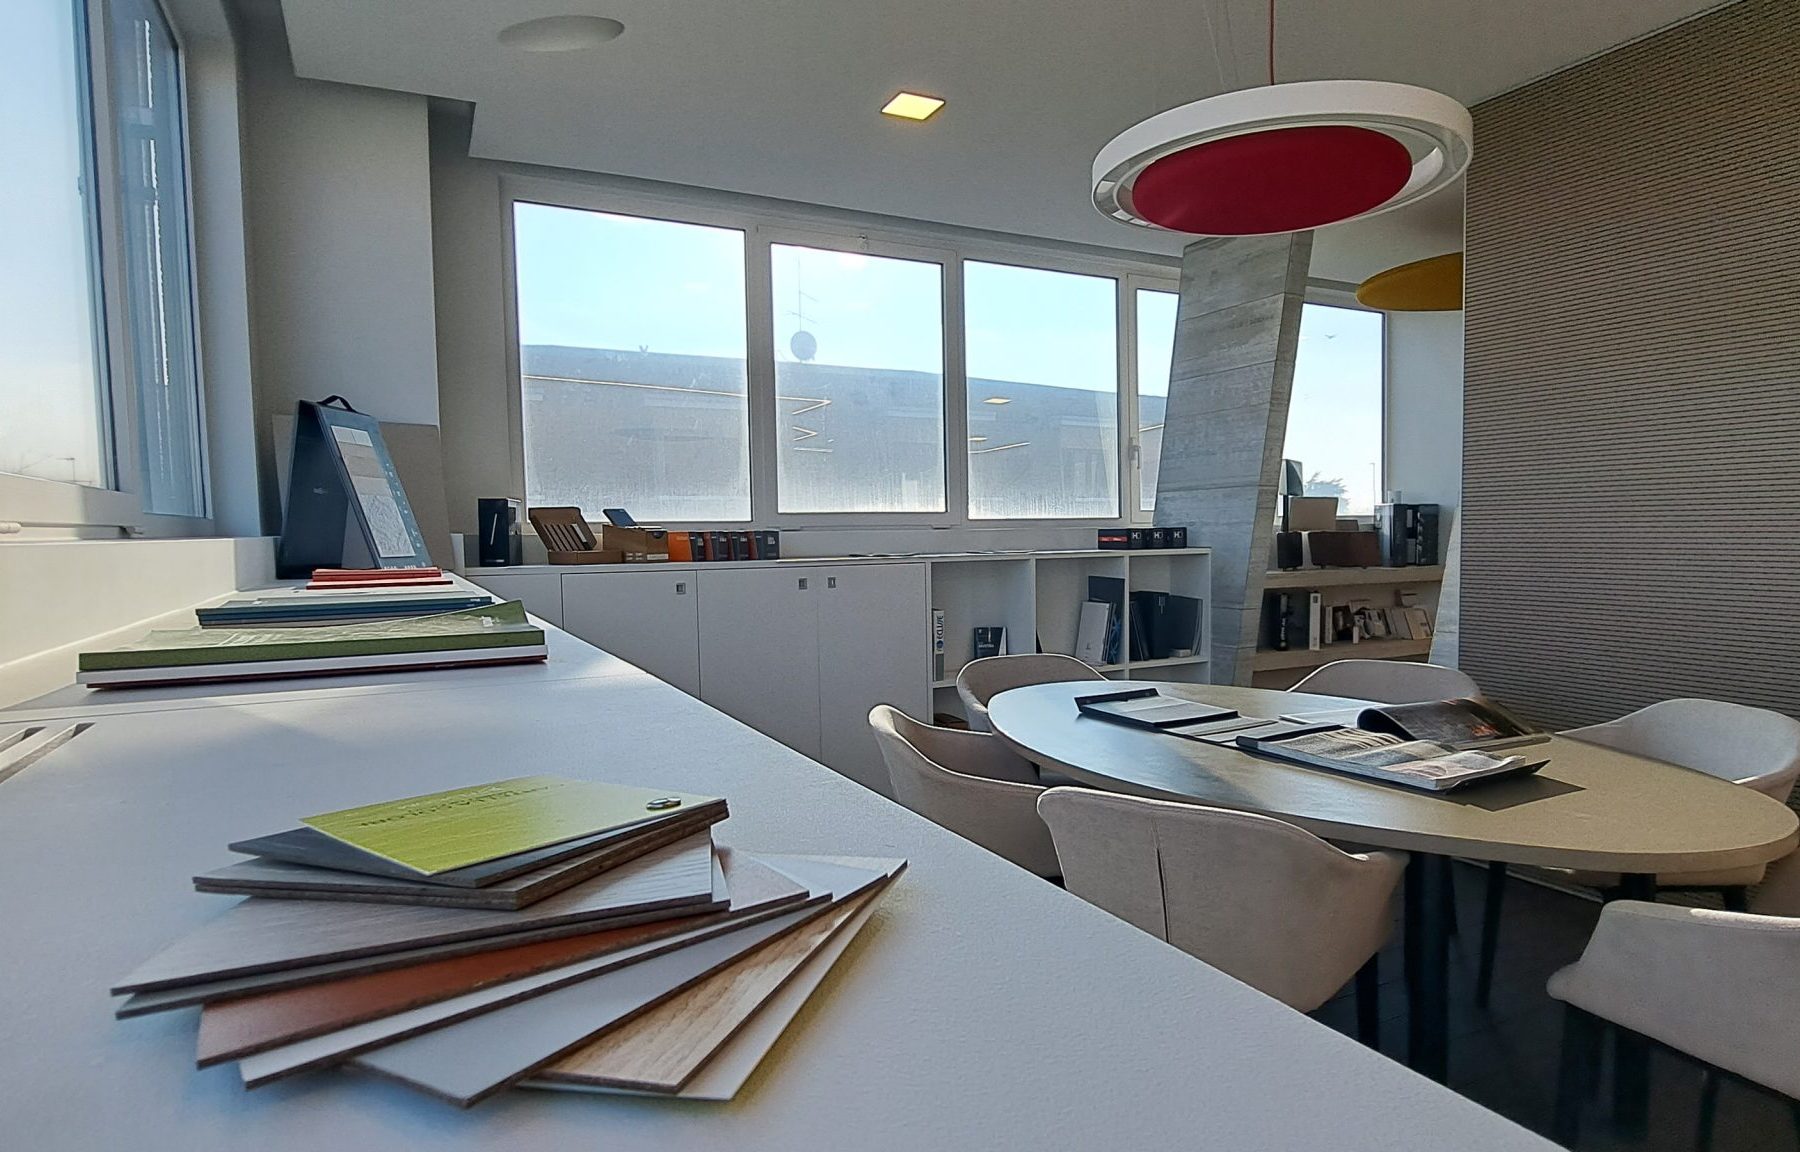 Ufficio moderno, illuminato, con tavolo riunioni e campioni.